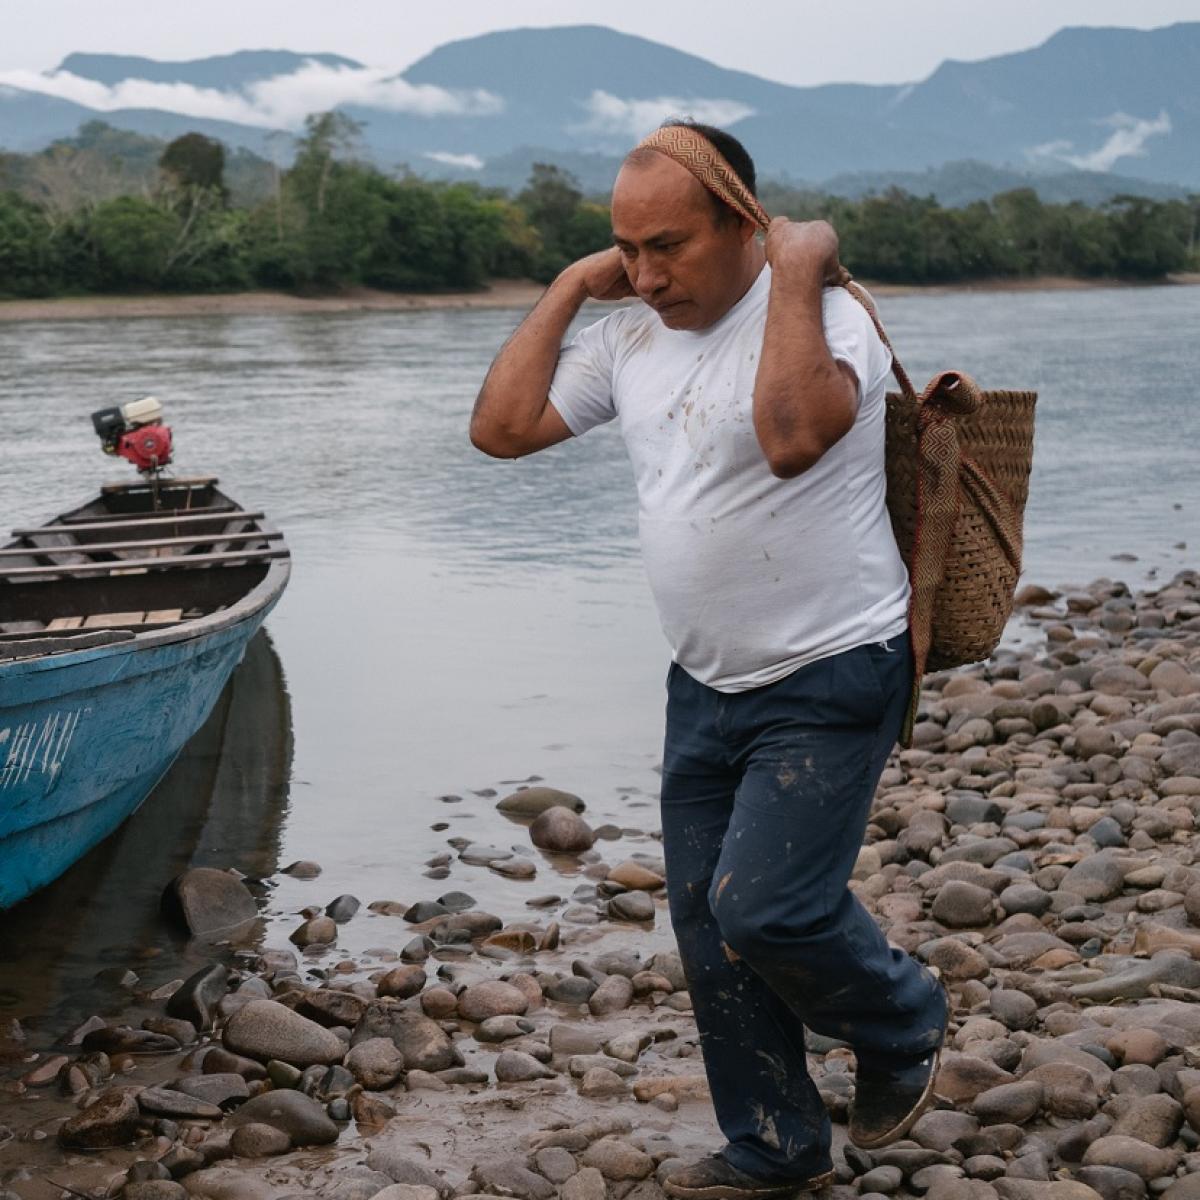 A man walks along a river shoreline carry a sack slung across his forehead.